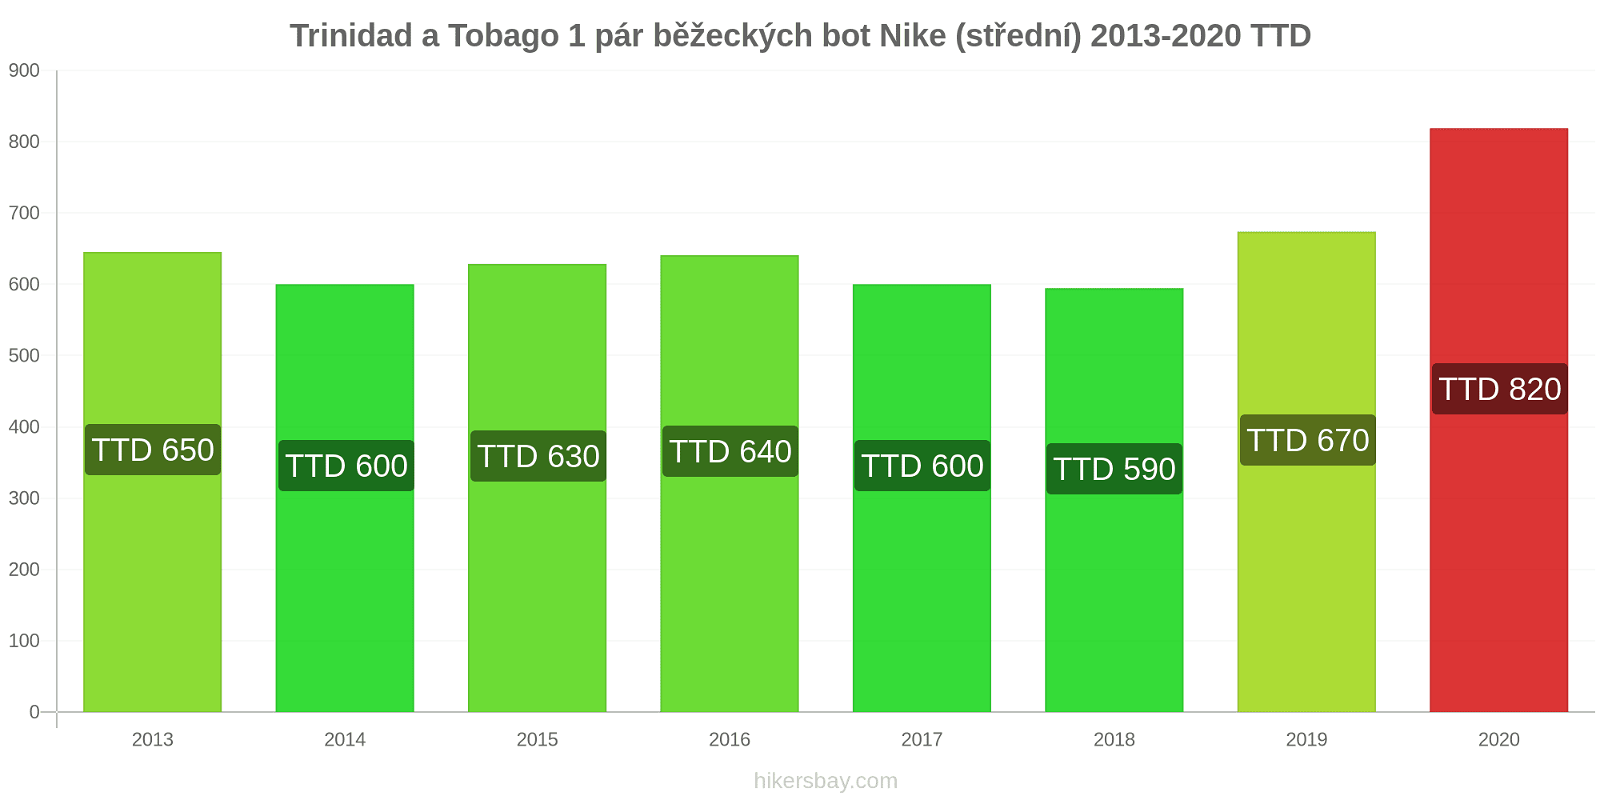 Trinidad a Tobago změny cen 1 pár běžeckých bot Nike (střední) hikersbay.com